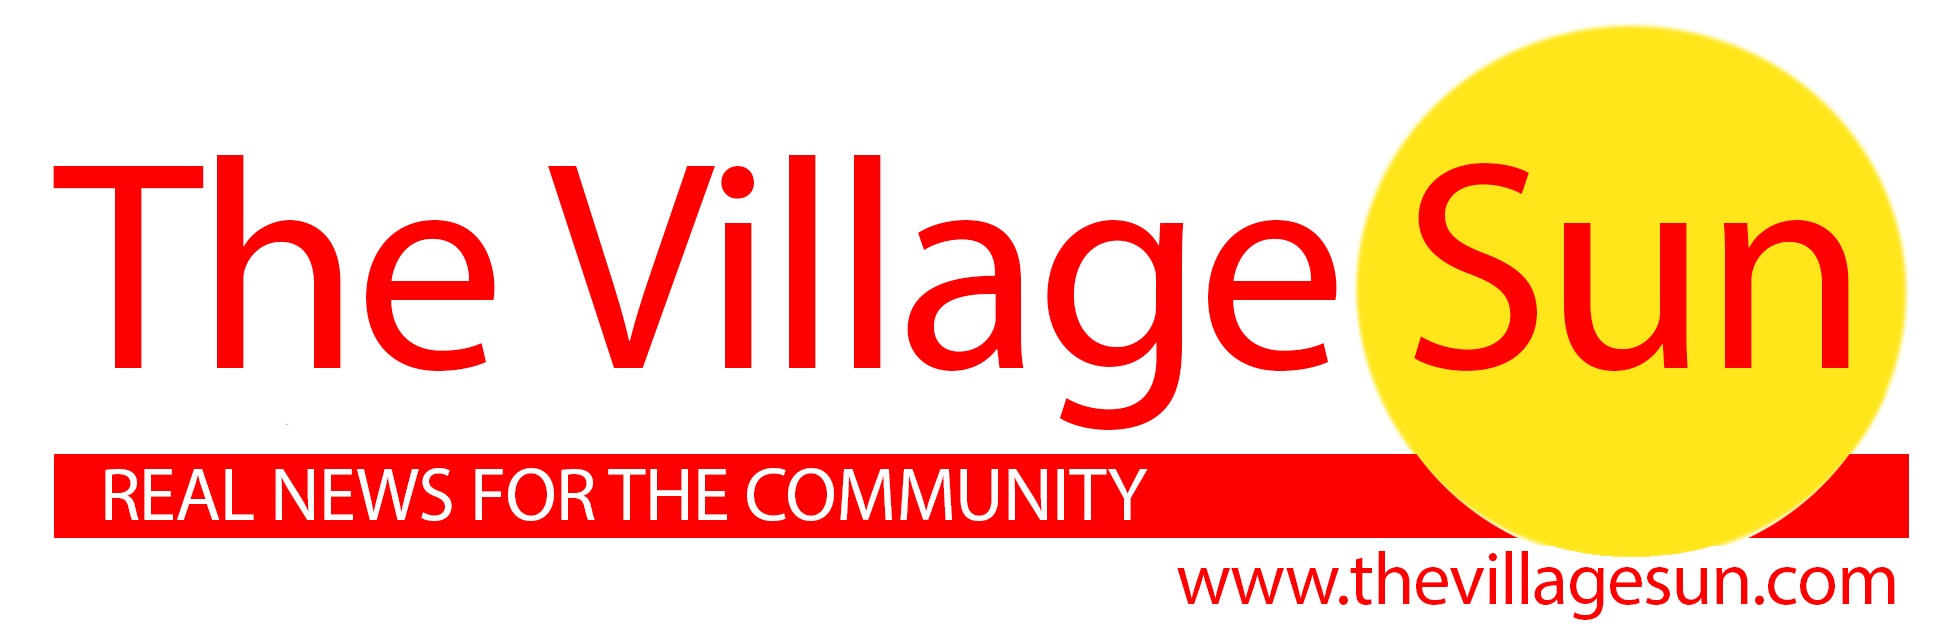 Village Sun Logo White Background